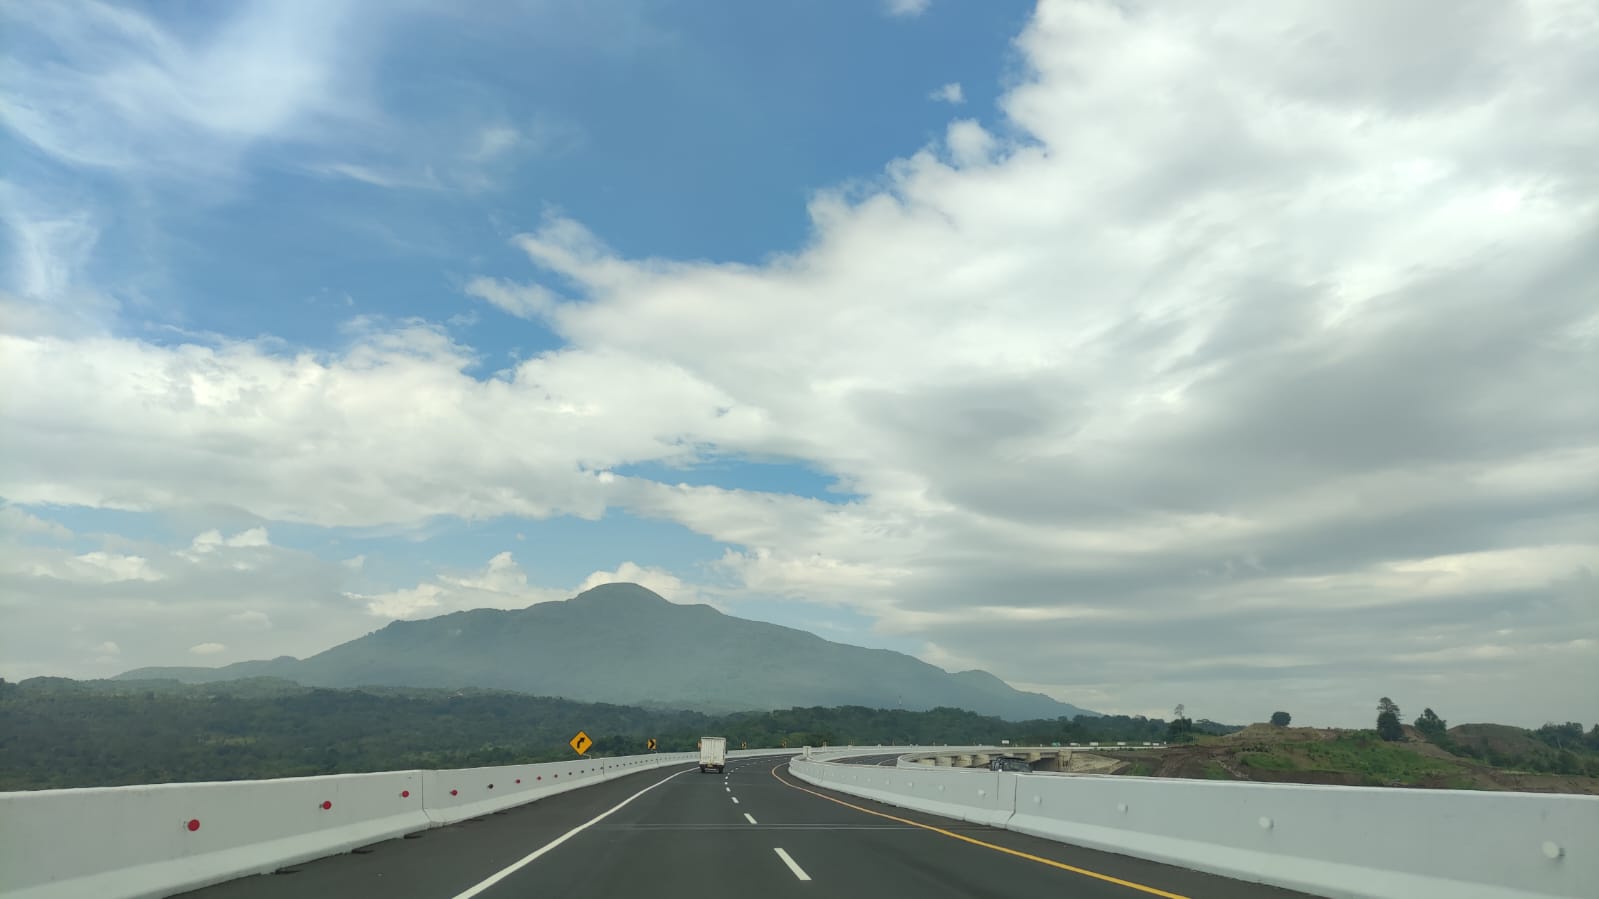 Kabar Terbaru Pembangunan Jalan Tol Cirebon - Kuningan, Bakal Lewat Kaki Gunung Ciremai